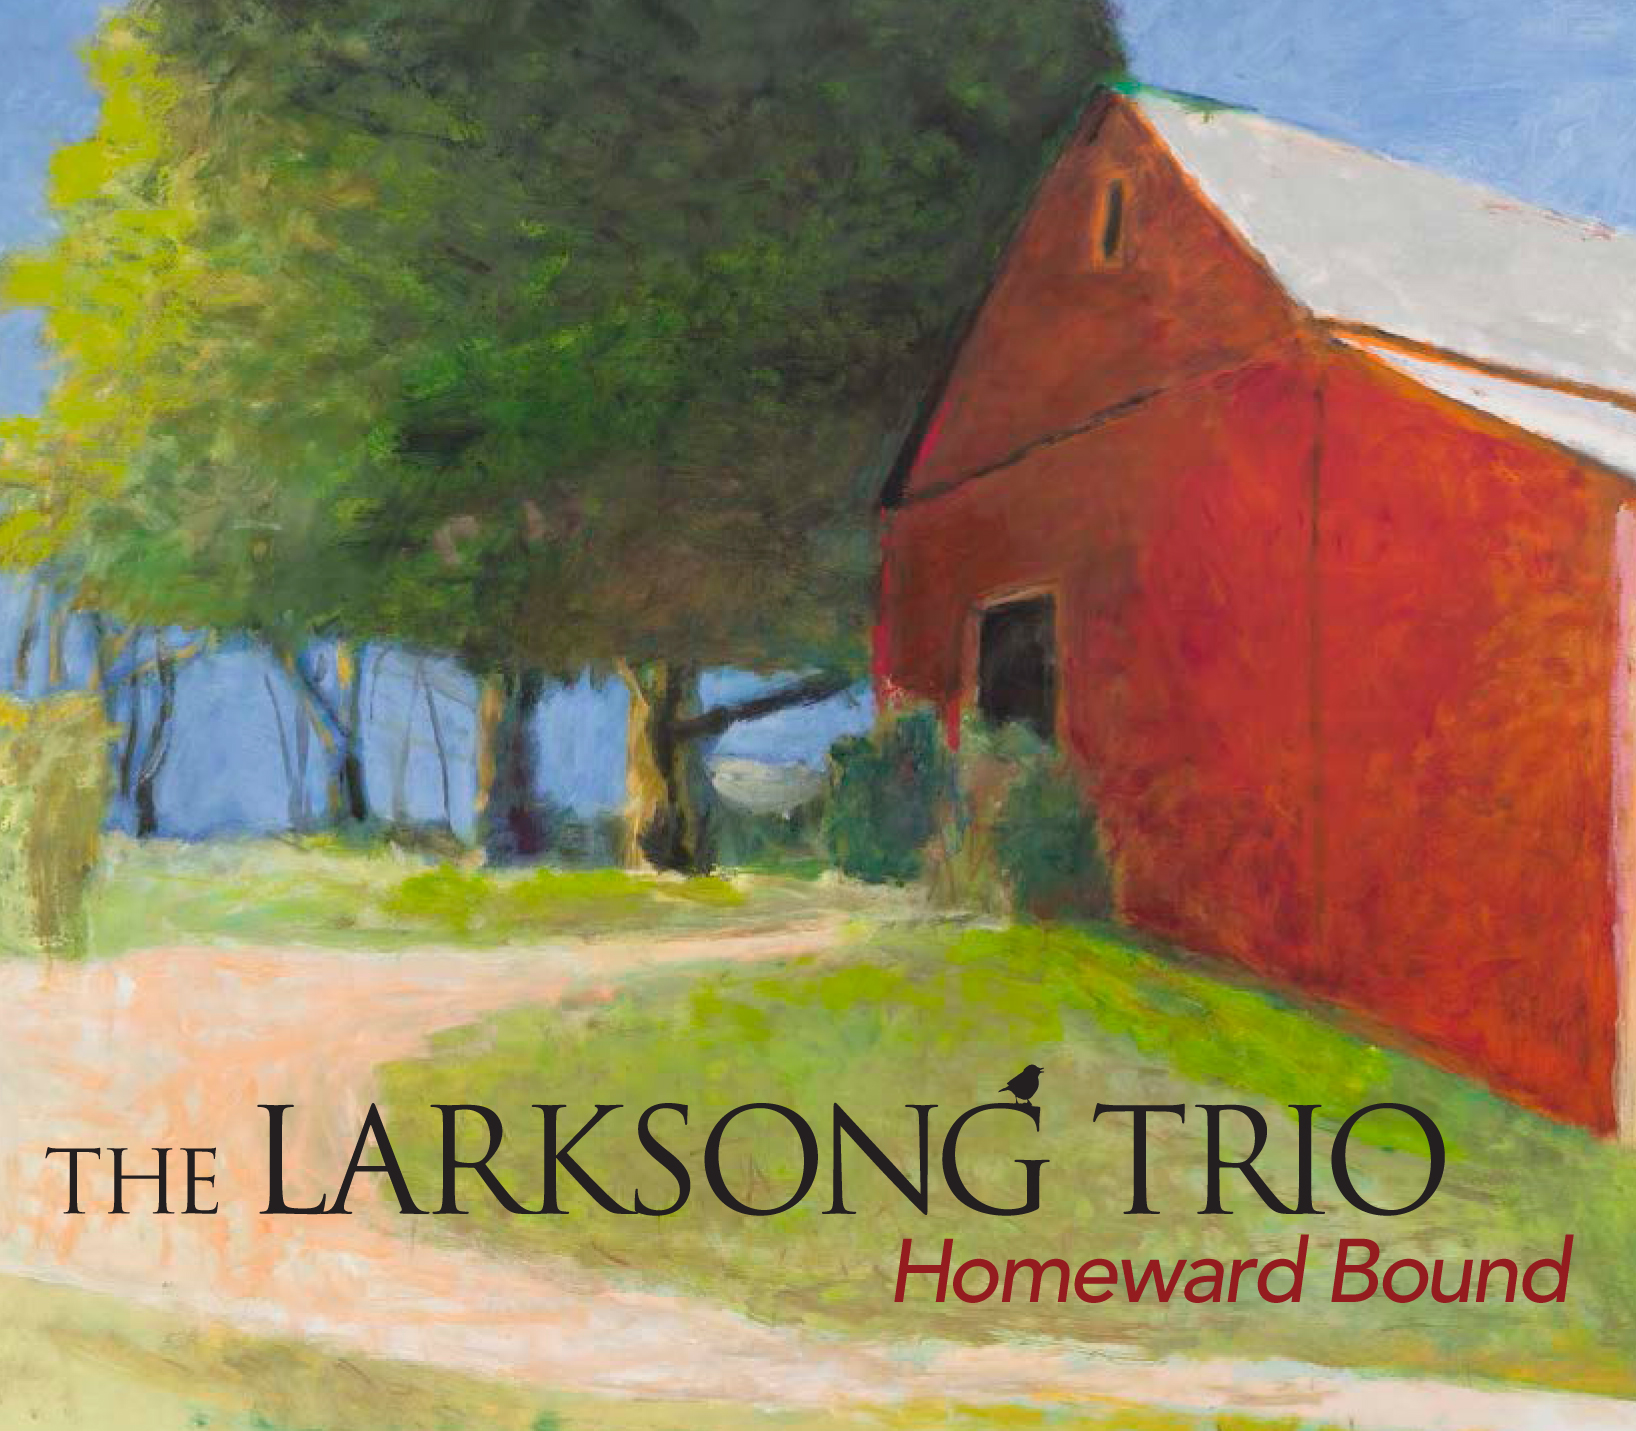 Homeward Bound by Larksong Trio